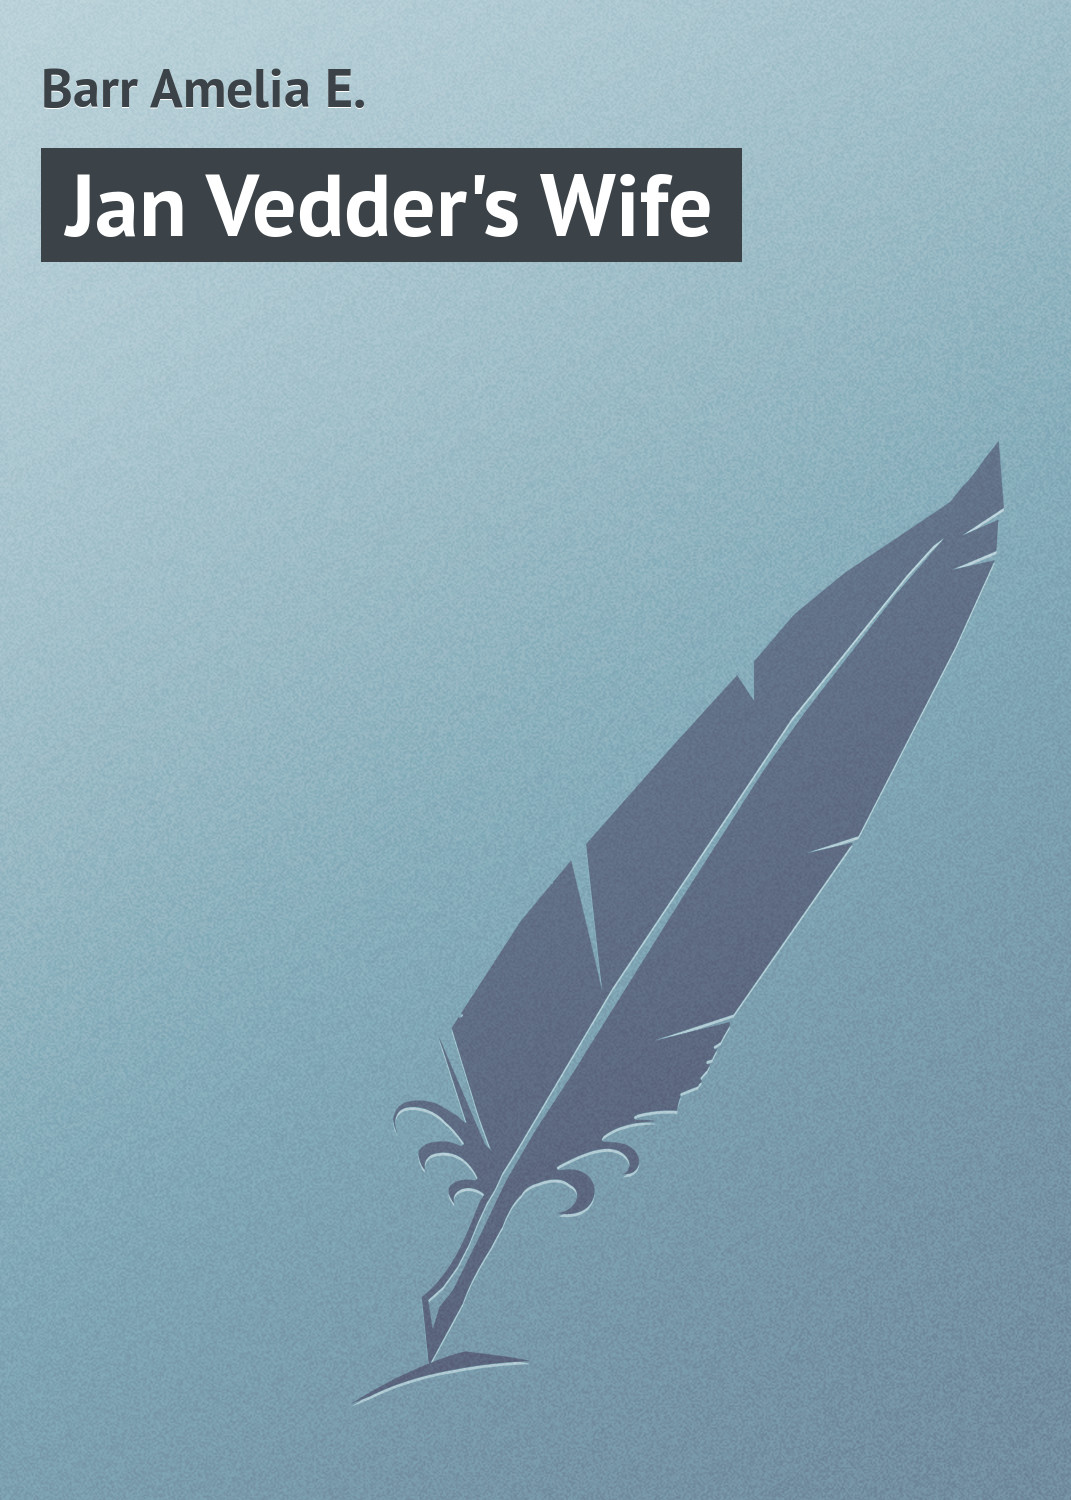 Книга Jan Vedder's Wife из серии , созданная Amelia Barr, может относится к жанру Зарубежная классика. Стоимость электронной книги Jan Vedder's Wife с идентификатором 23166379 составляет 5.99 руб.